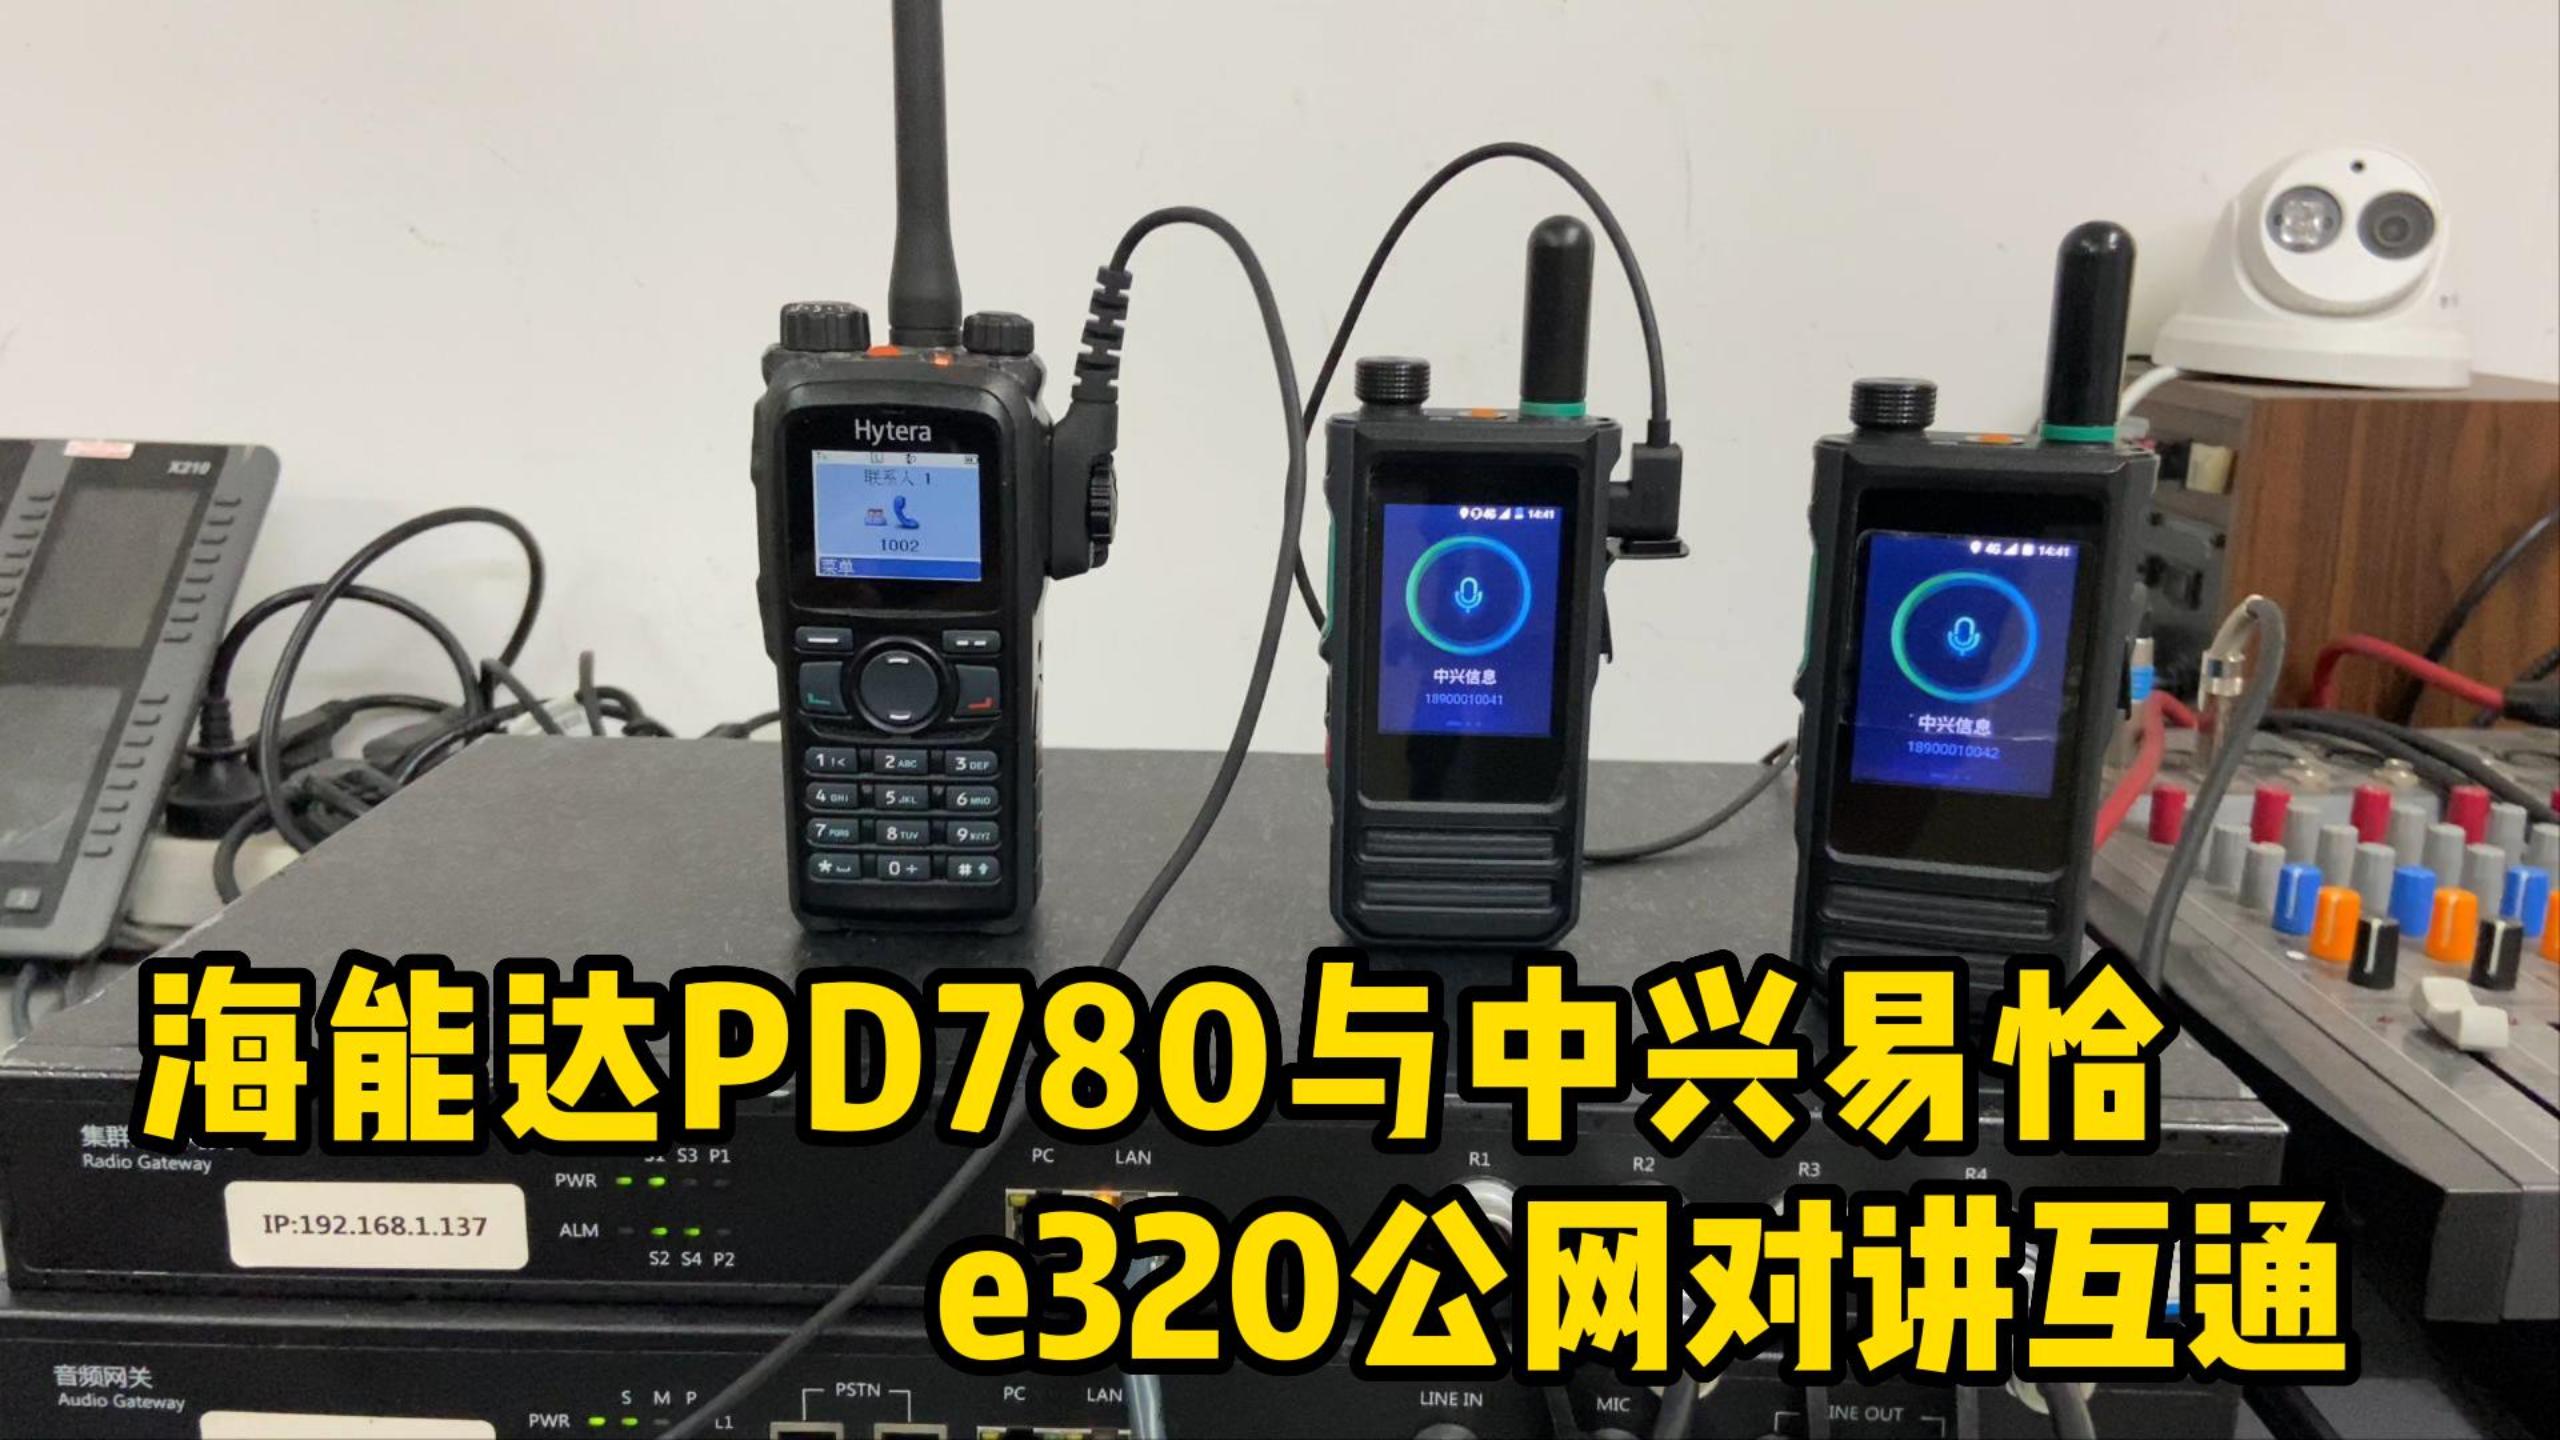 集群网关演示海能达PD780与中兴易恰e320公网对讲机互通